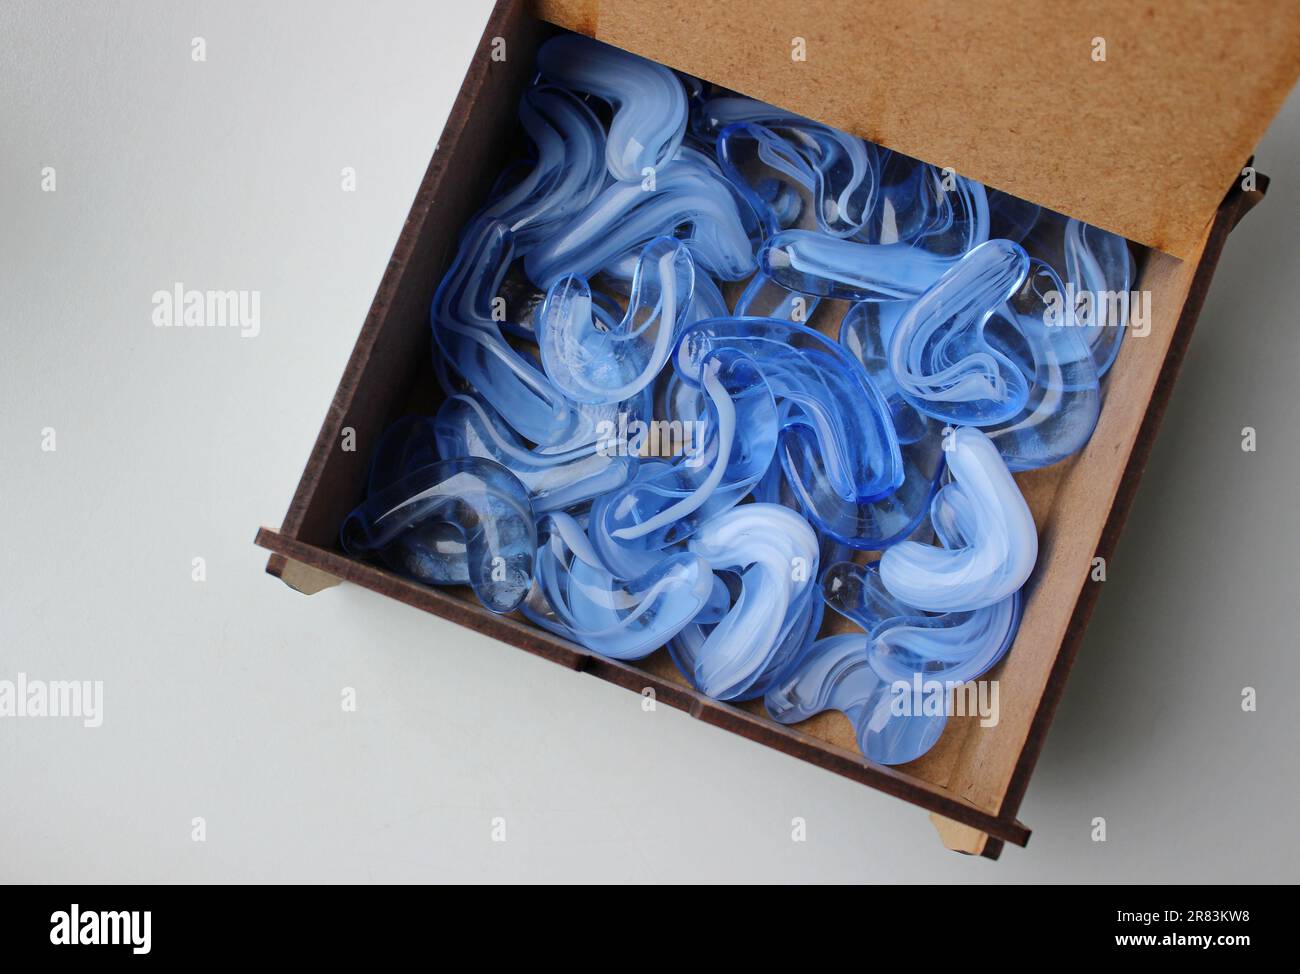 Boîte en contreplaqué avec couvercle ouvert à moitié remplie de pierres cristallines artificielles bleues translucides Banque D'Images